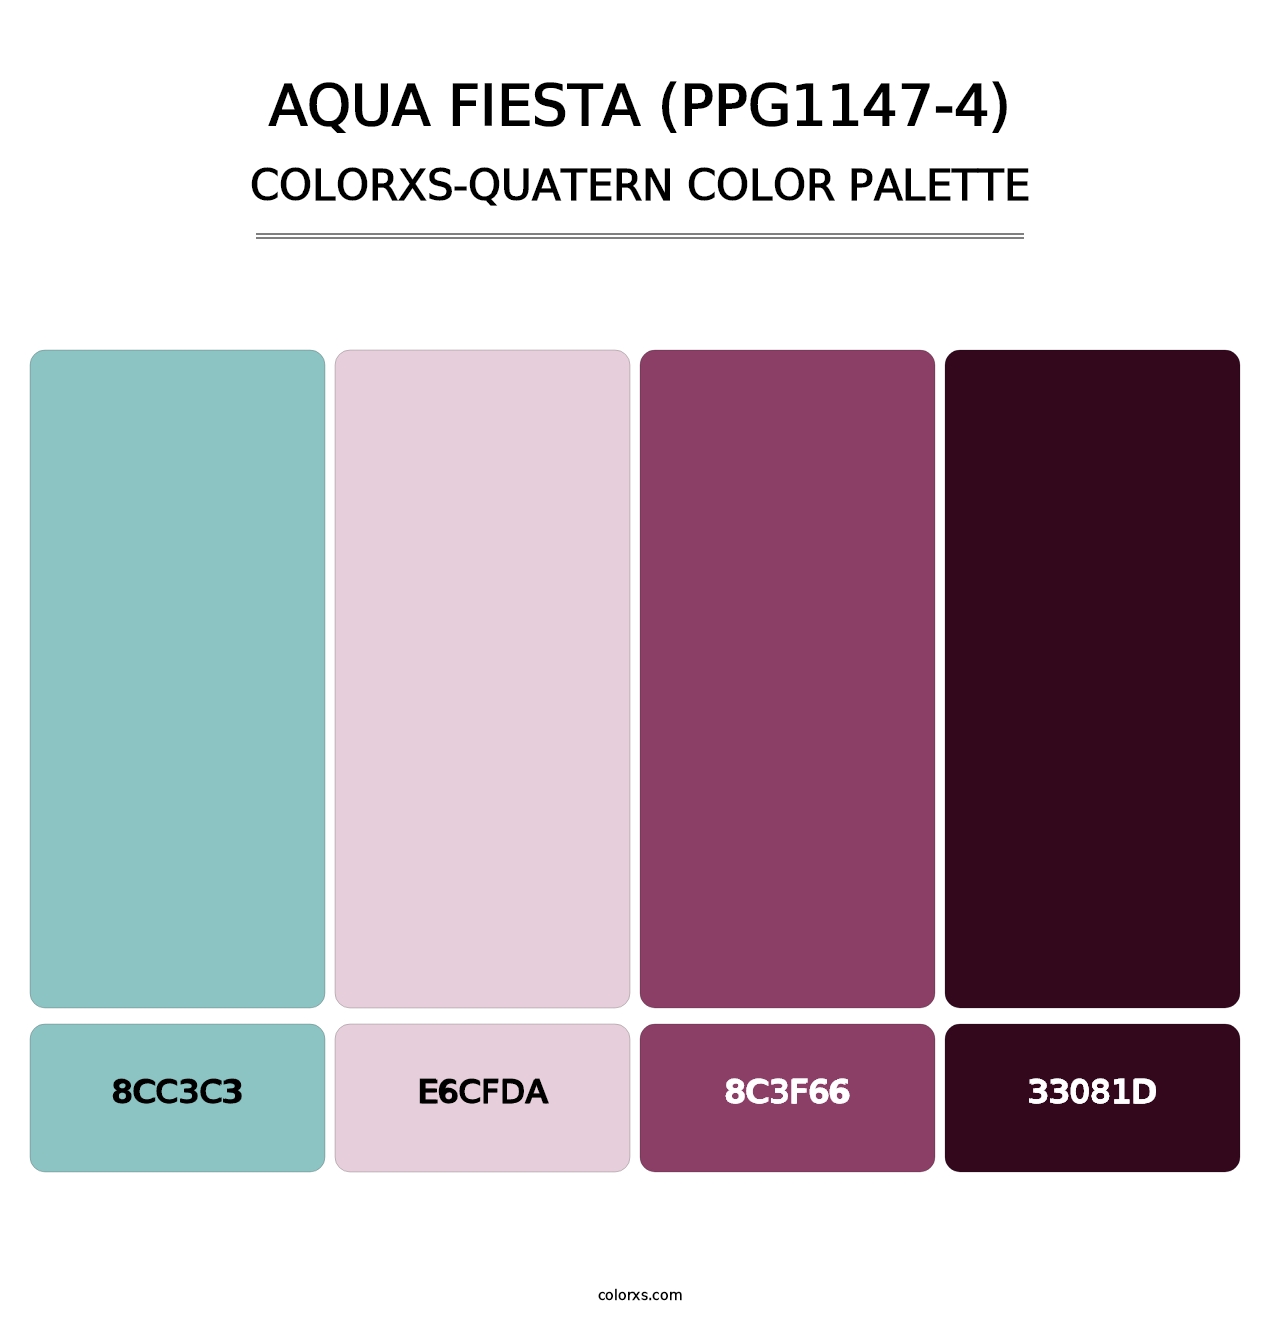 Aqua Fiesta (PPG1147-4) - Colorxs Quatern Palette